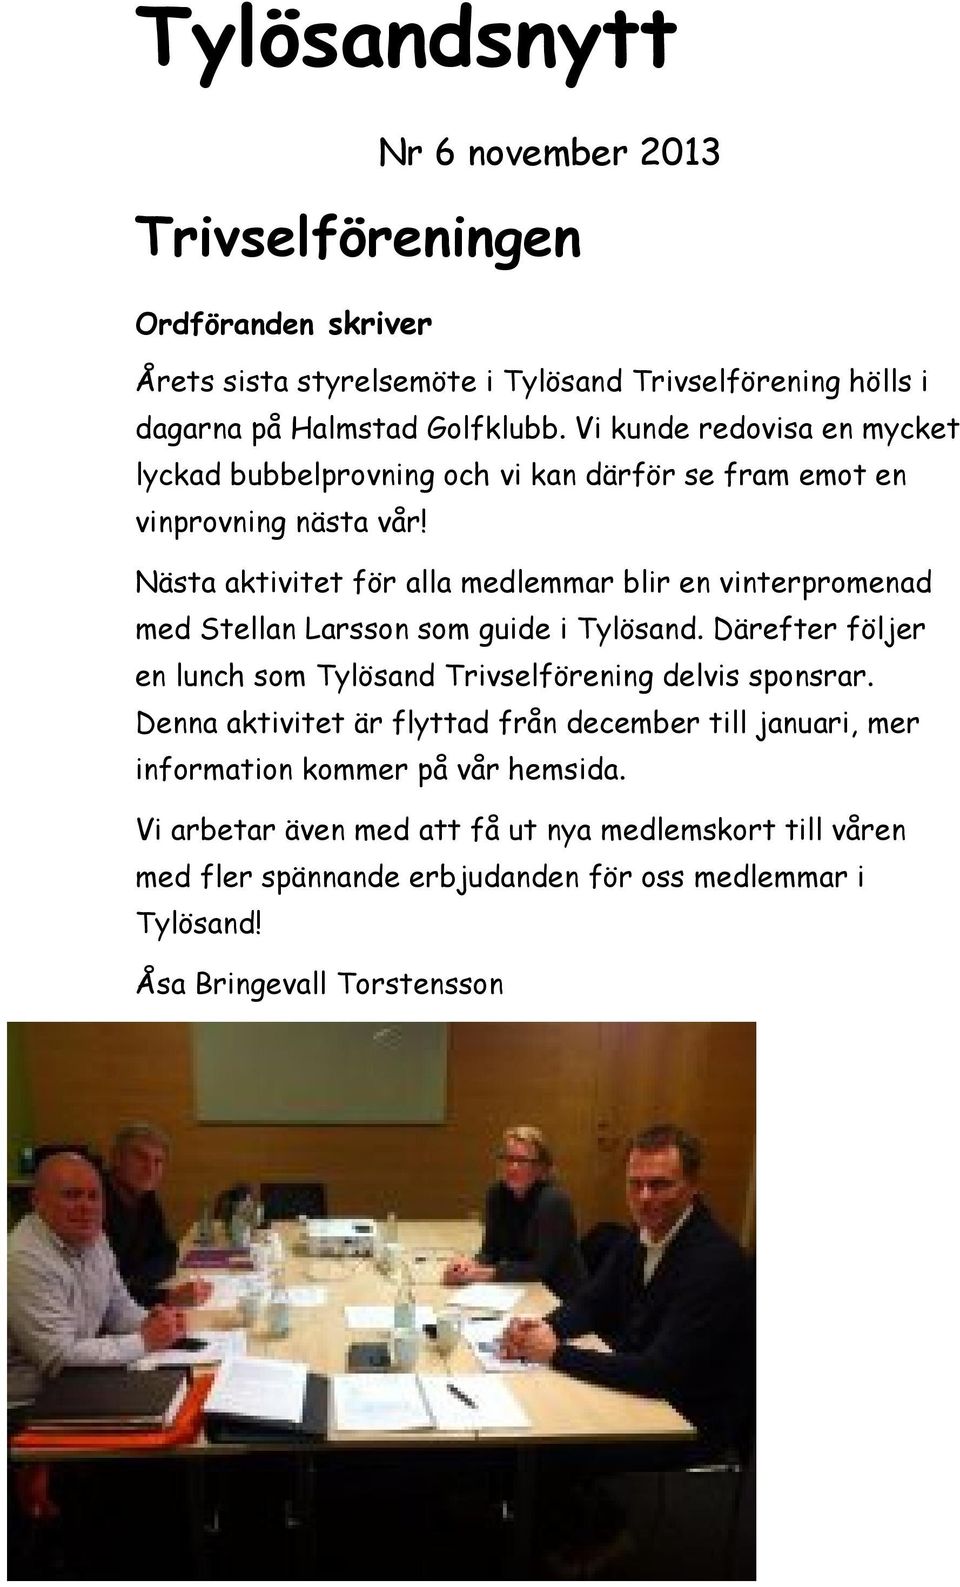 Nästa aktivitet för alla medlemmar blir en vinterpromenad med Stellan Larsson som guide i Tylösand. Därefter följer en lunch som Tylösand Trivselförening delvis sponsrar.